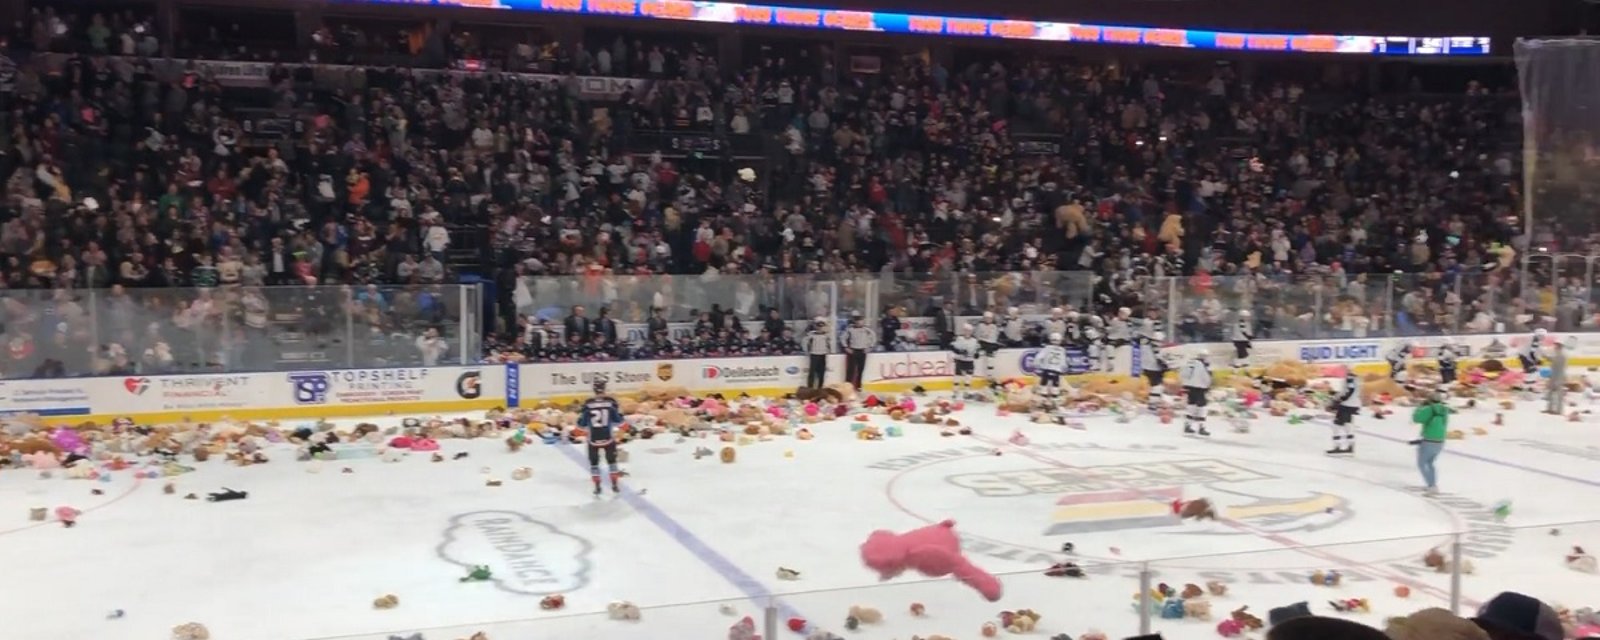 Hockey fans in Colorado make it rain Teddy Bears!